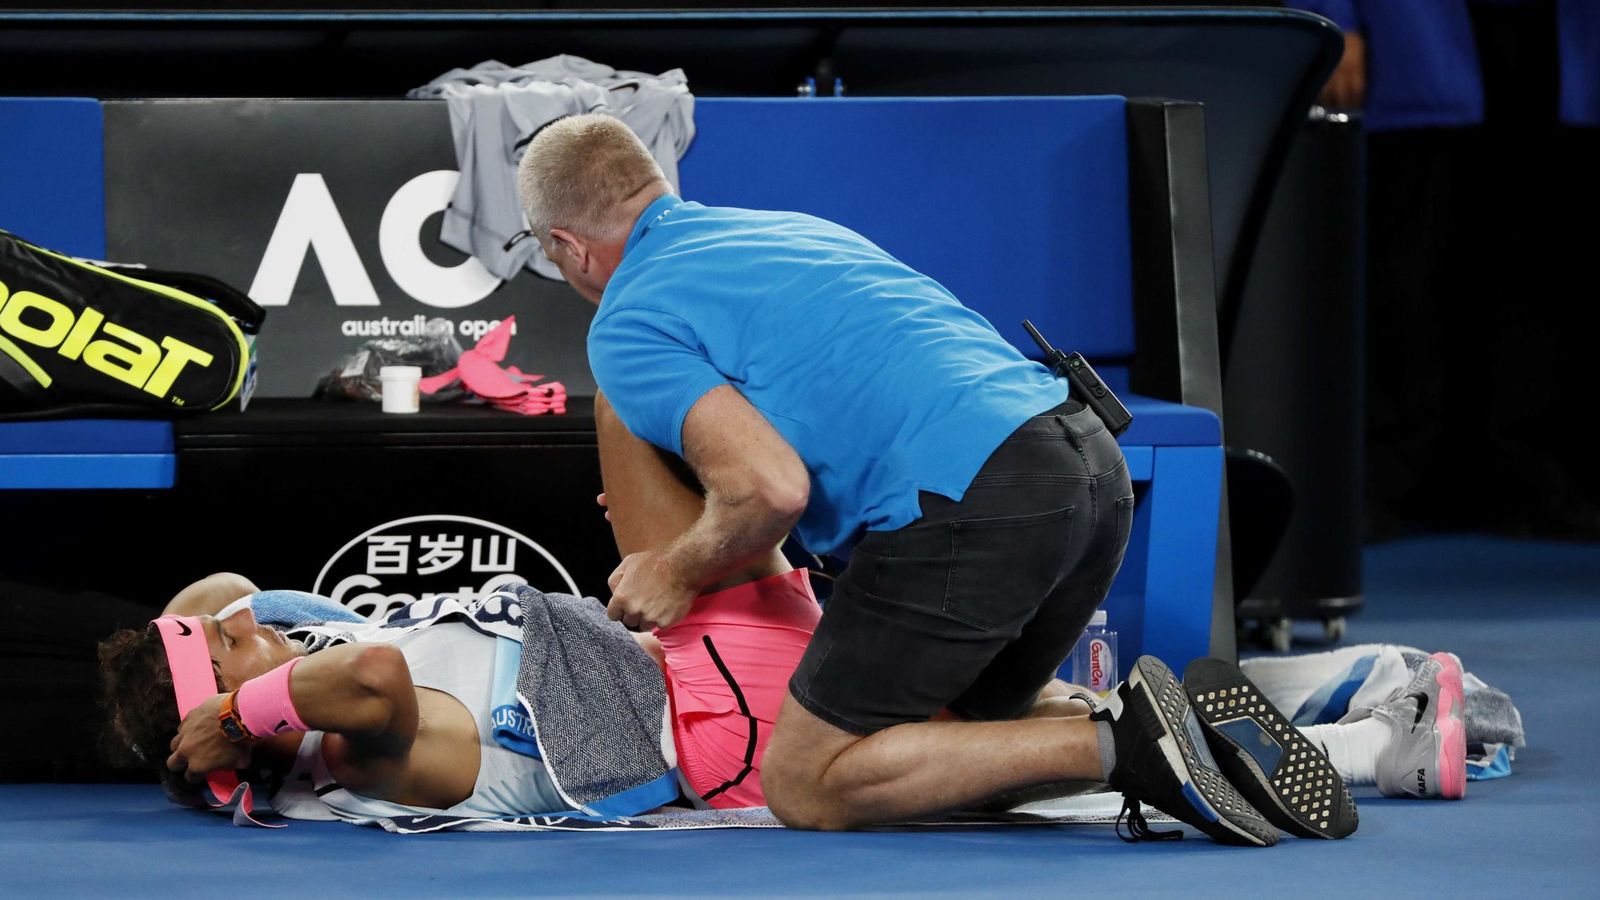 Foto: Nadal fue atendido por el fisioterapeuta durante su partido contra Cilic y luego acabó retirándose. (Reuters)